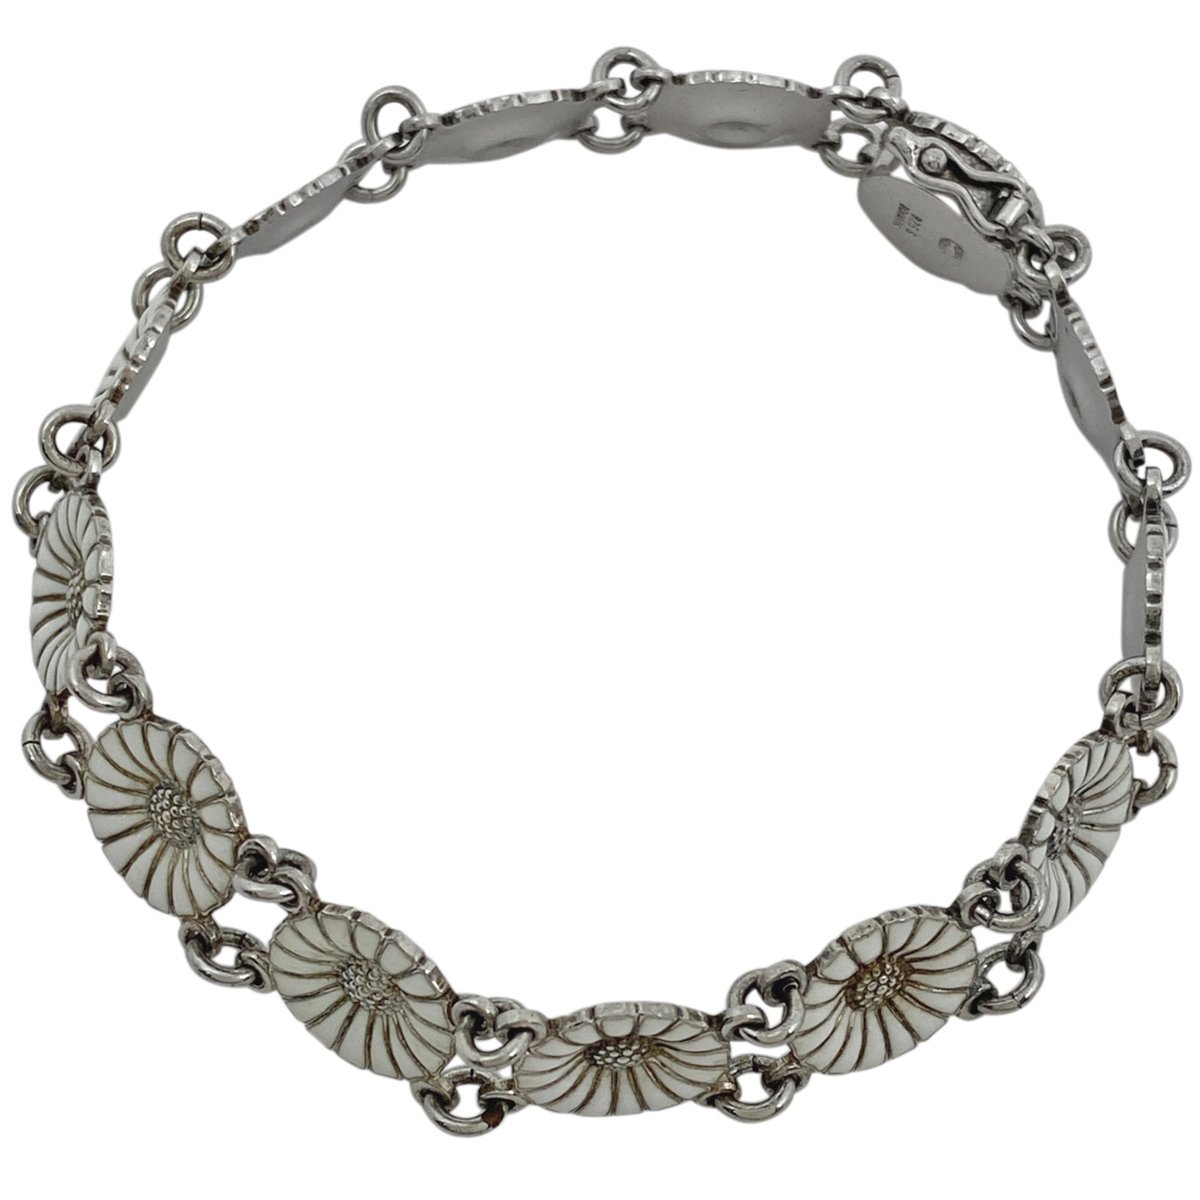  George Jensen Georg Jensen цветочный узор браслет браслет серебряный 925 серебряный белый женский [ б/у ]